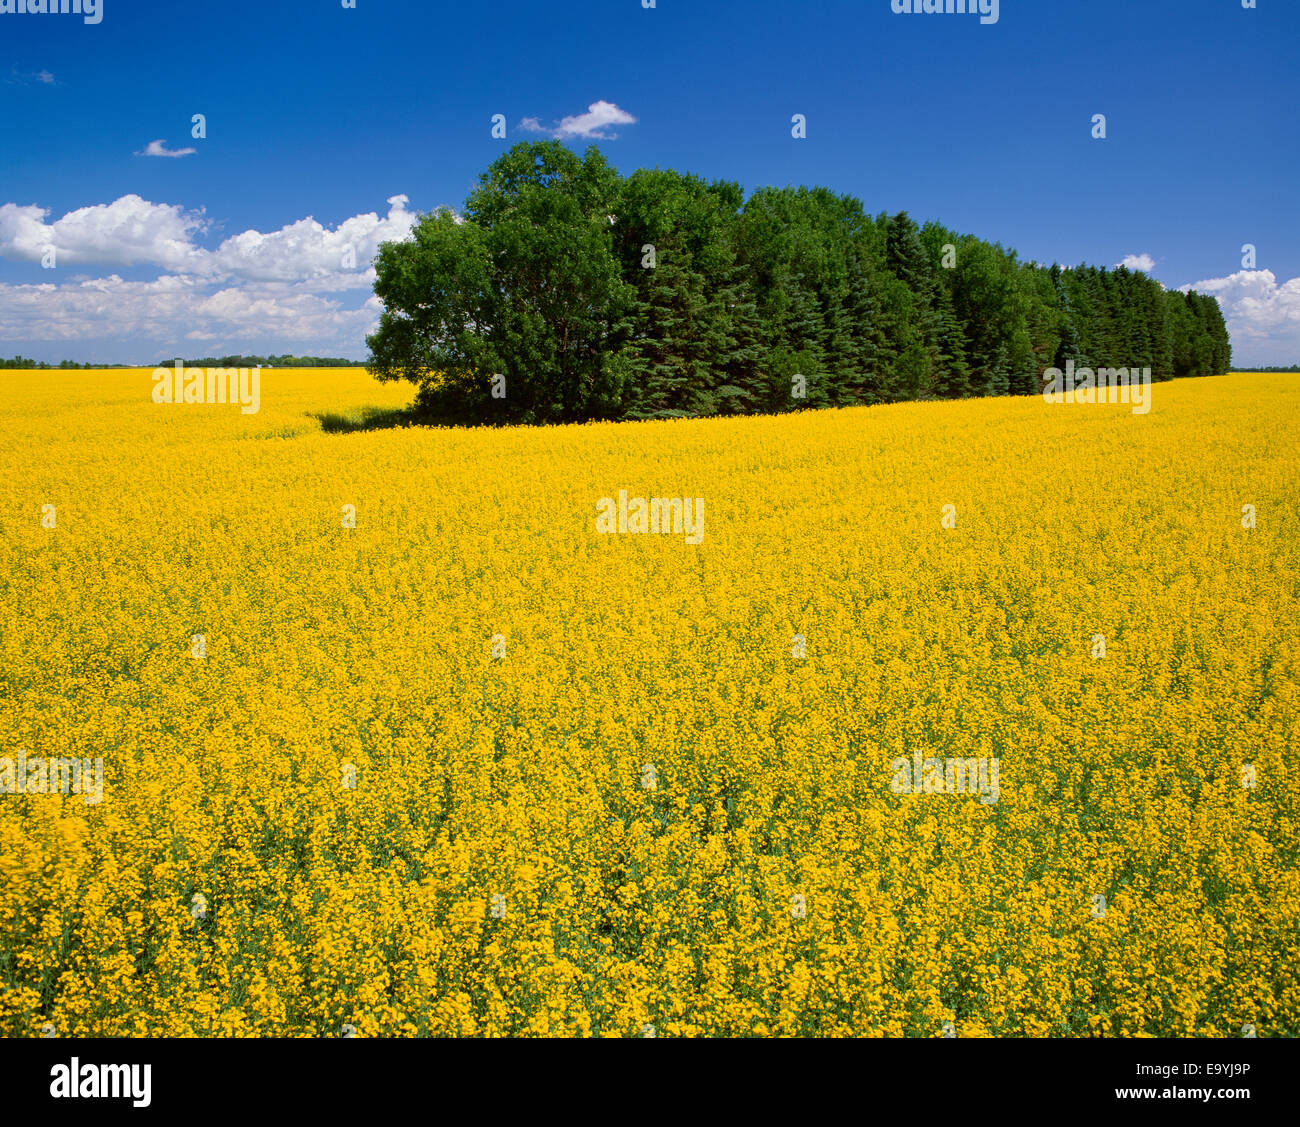 Landwirtschaft - Raps Feld in voller Blüte mit einem Baum Schutz-Gürtel durch das Feld / Niverville, Manitoba, Kanada. Stockfoto